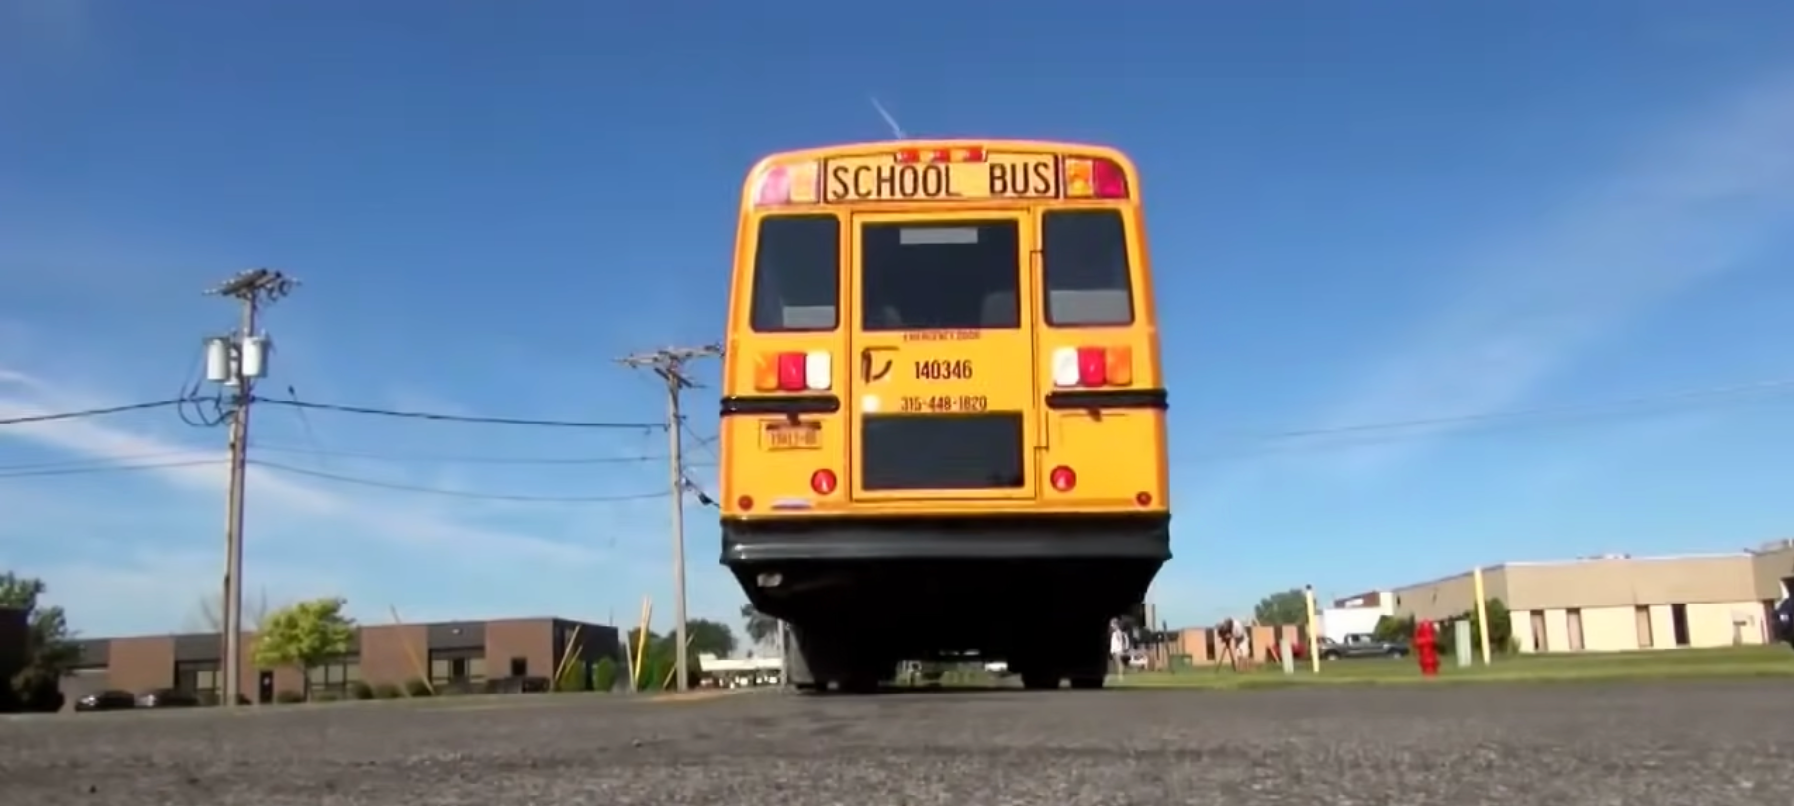 Un bus scolaire | Source : Youtube.com/Inside Edition